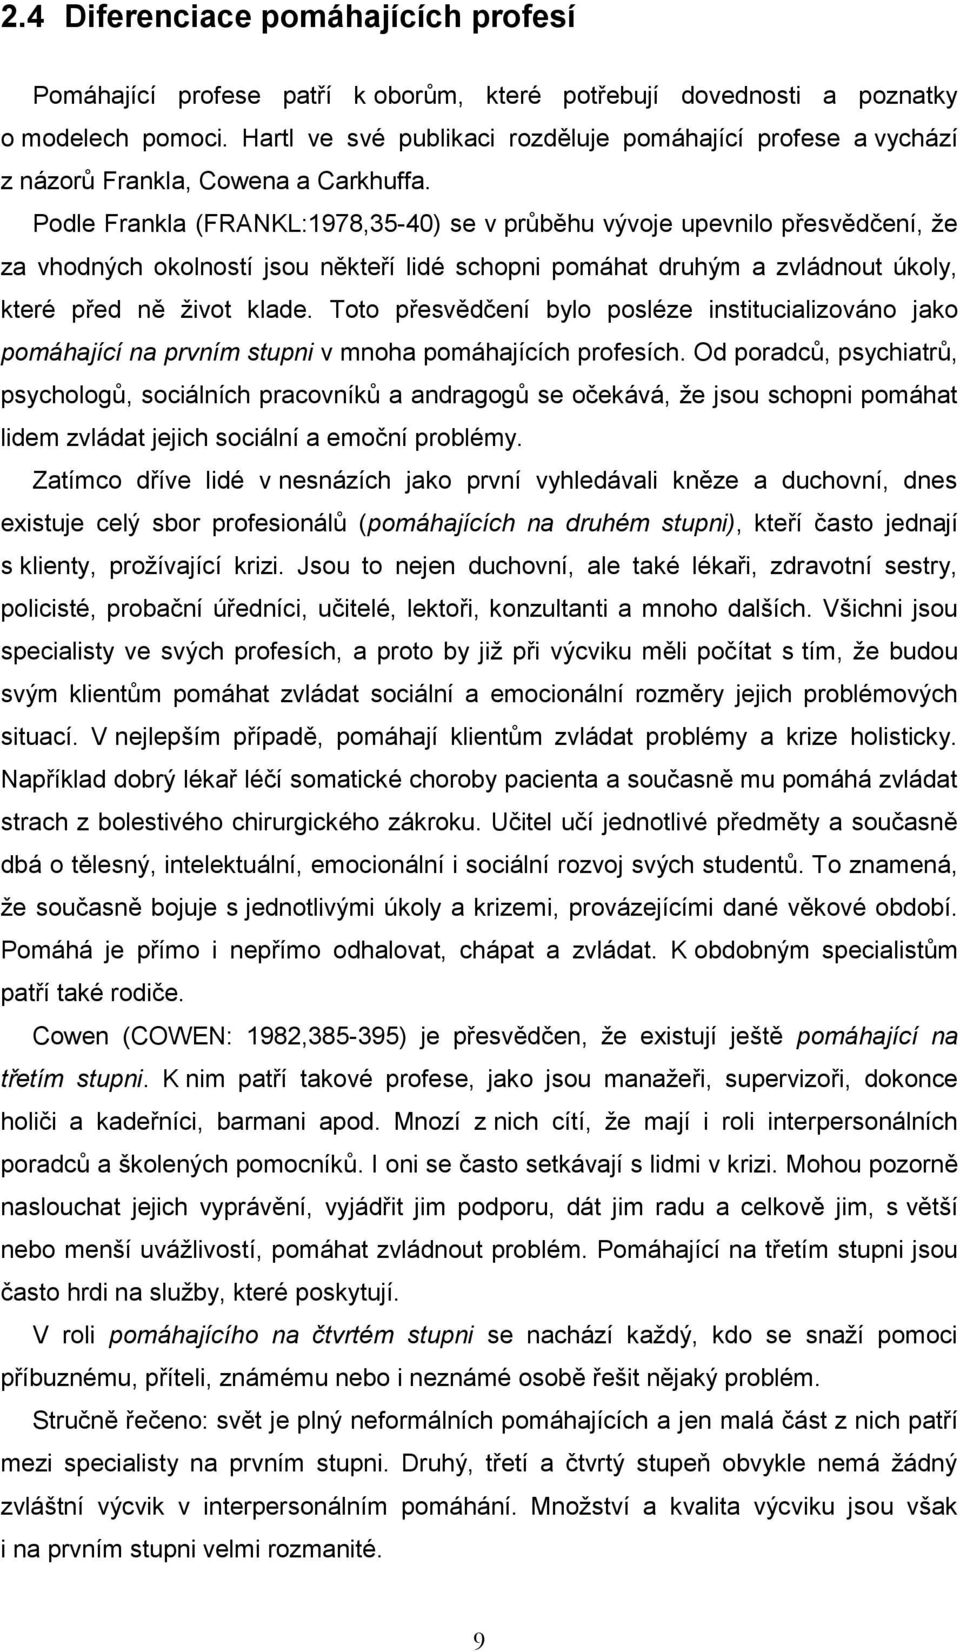 Andragogické souvislosti ošetřovatelské profese - PDF Stažení zdarma